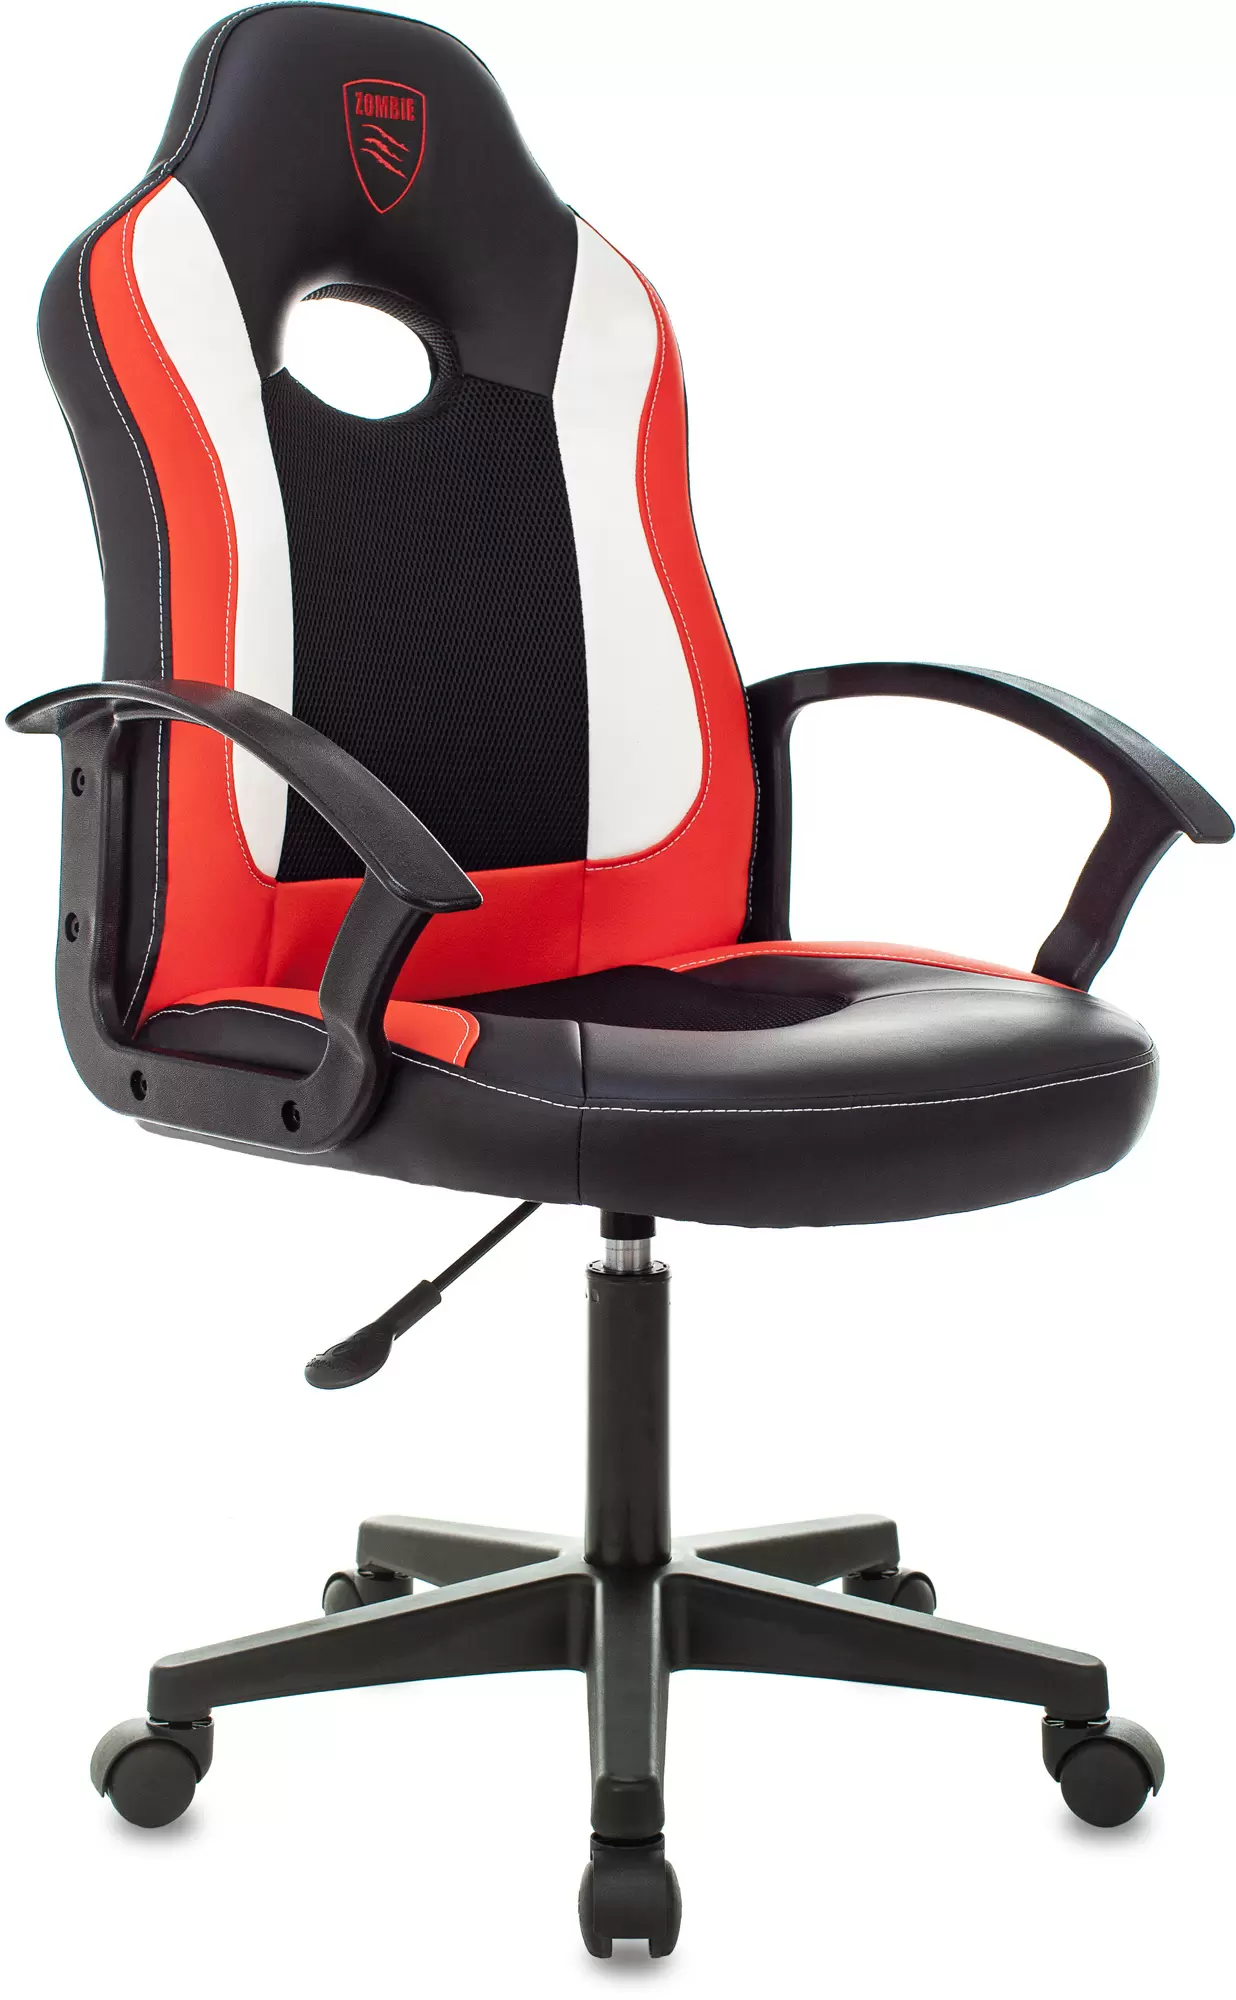 Кресло игровое ZOMBIE 11LT RED черный/красный, текстиль/эко.кожа, крестовина пластик - VLARNIKA в Луганске